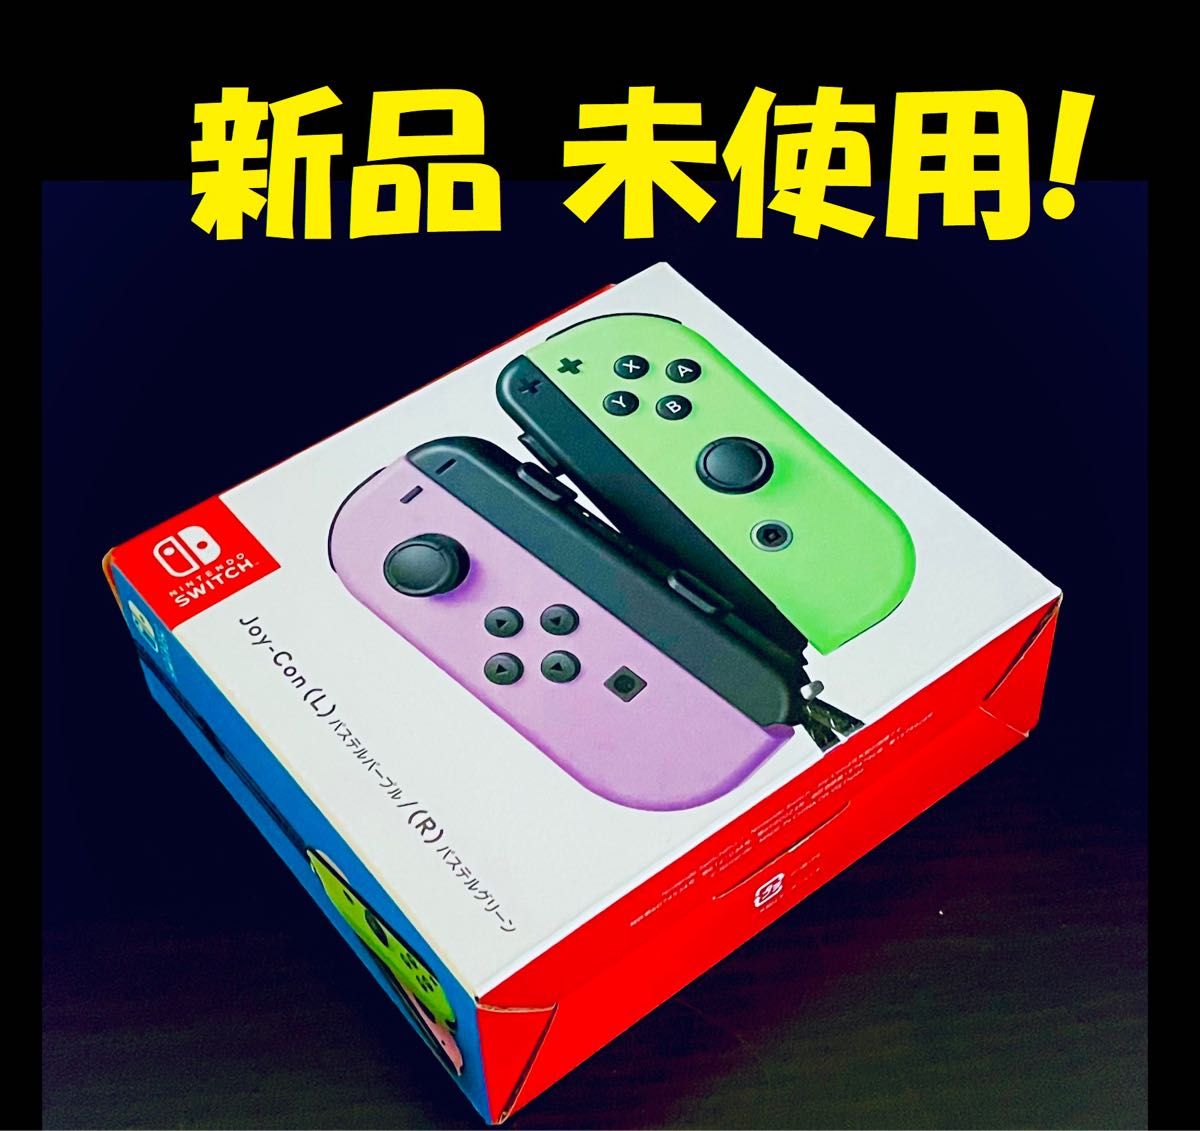 【新品未使用】 Nintendo Switch Joy-Con パステルパープル パステルグリーン ジョイコン